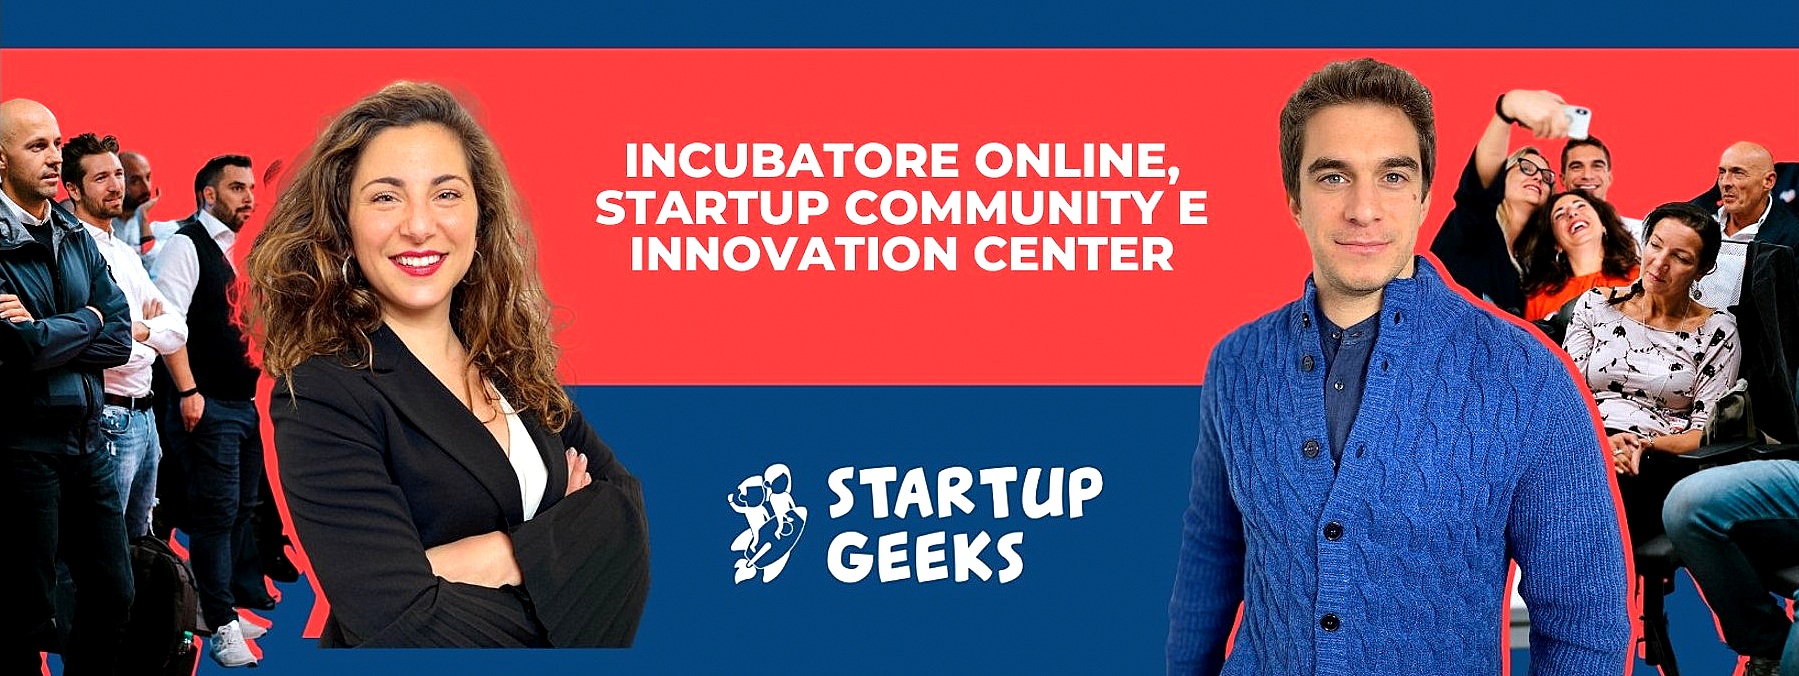 Startup e innovazione: alla ricerca di imprese e talenti. Al via la nuova partnership tra Phoenix e Startup Geeks